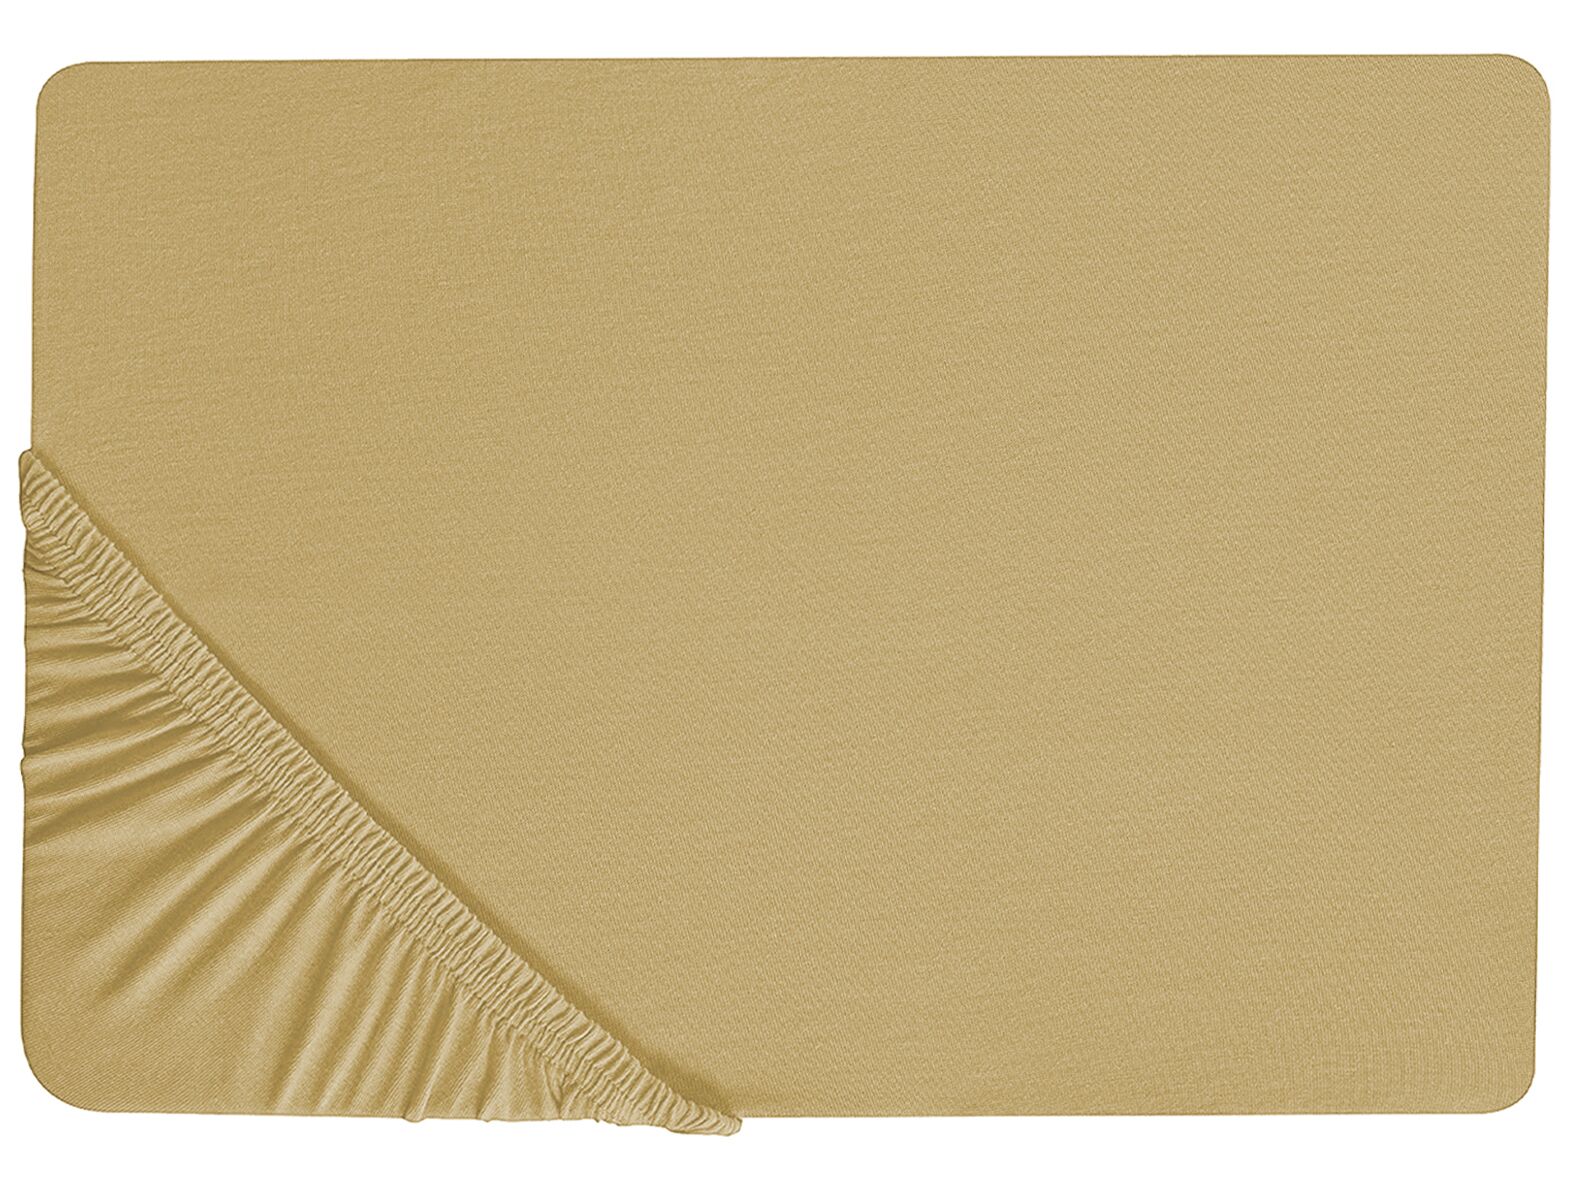 Olivazöld pamut gumis lepedő 200 x 200 cm JANBU_845904